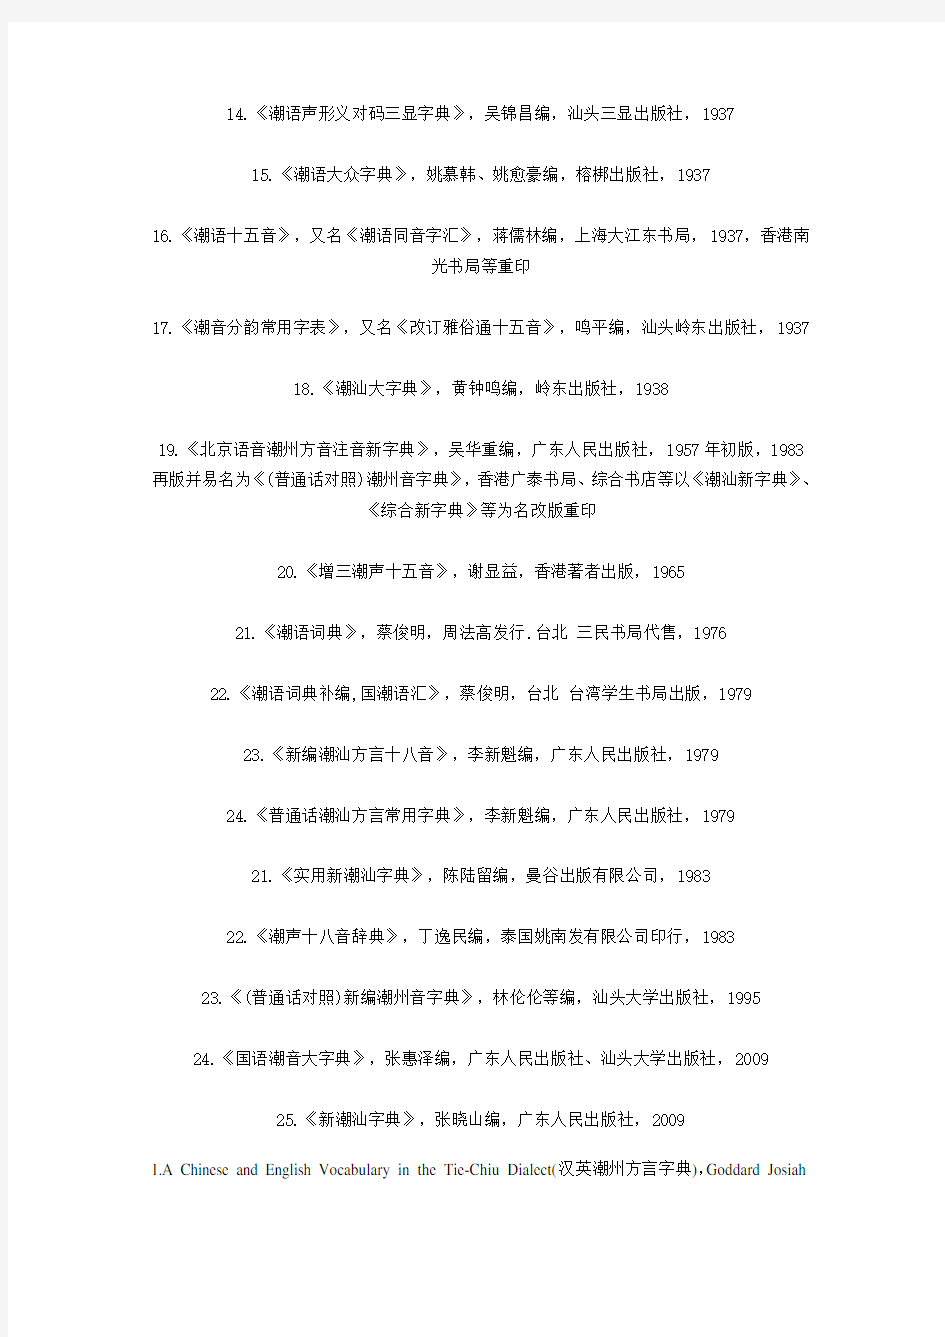 潮汕语字典一览表